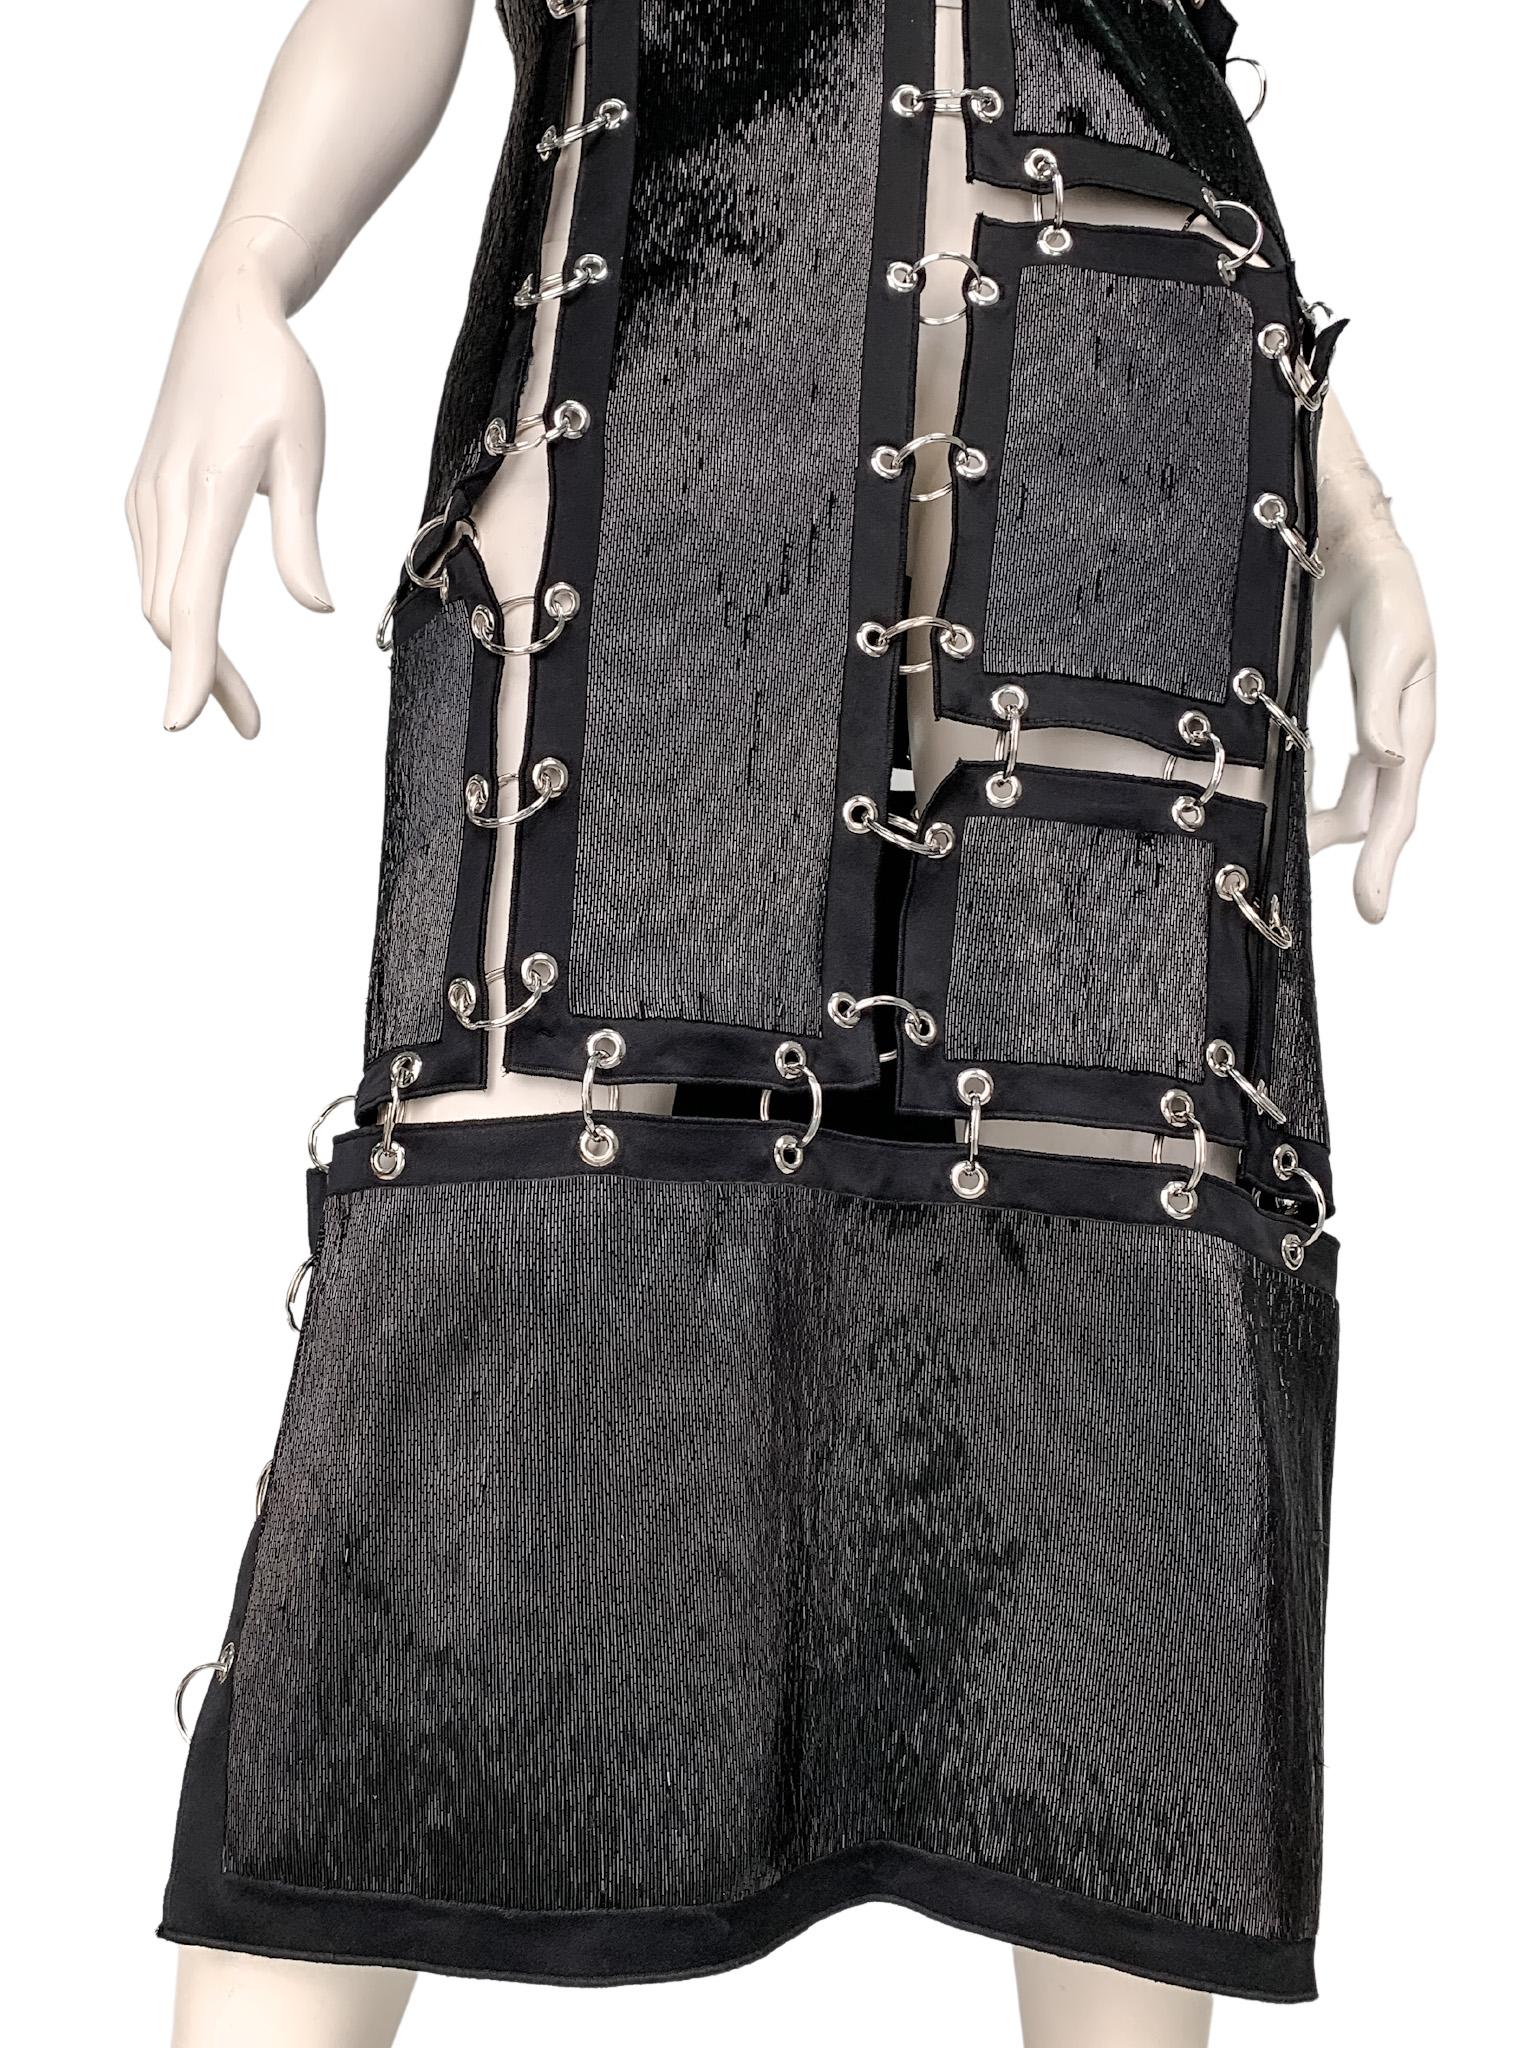 2017 Christopher Kane runway dress very similar to MET museum held Ring Dress 2